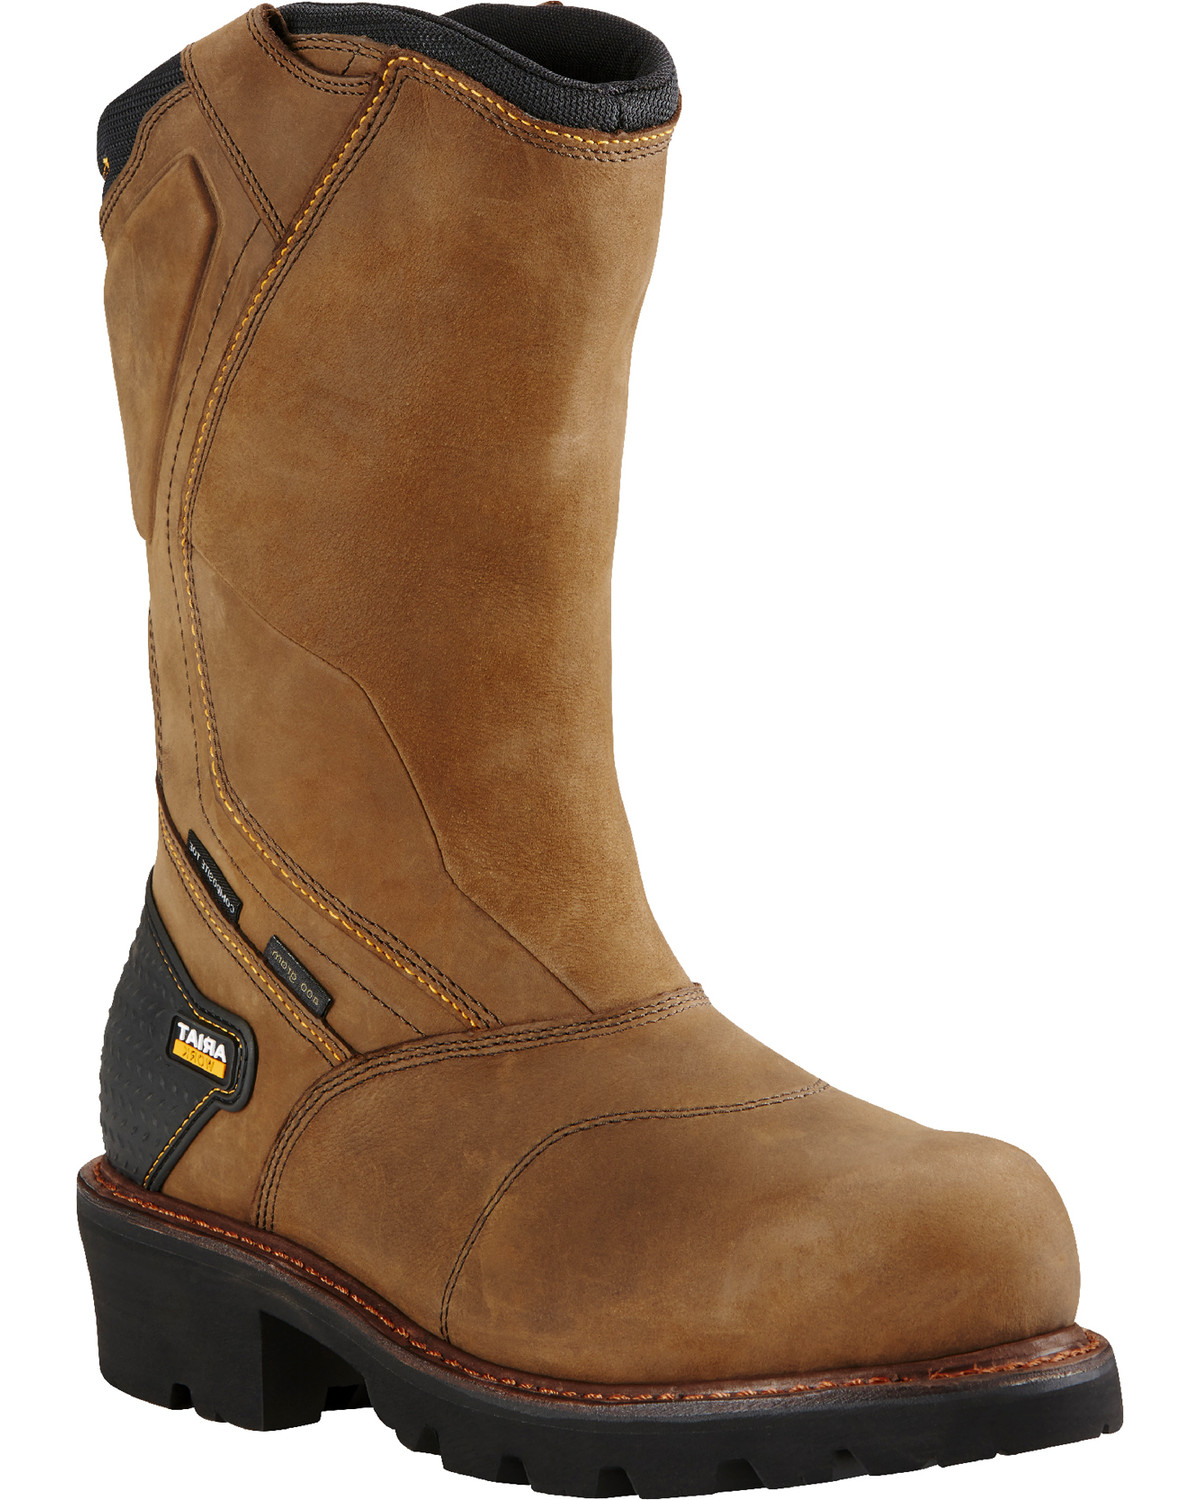 Ariat Men's Powerline Composite Toe Insulated Waterproof Work Boots ...